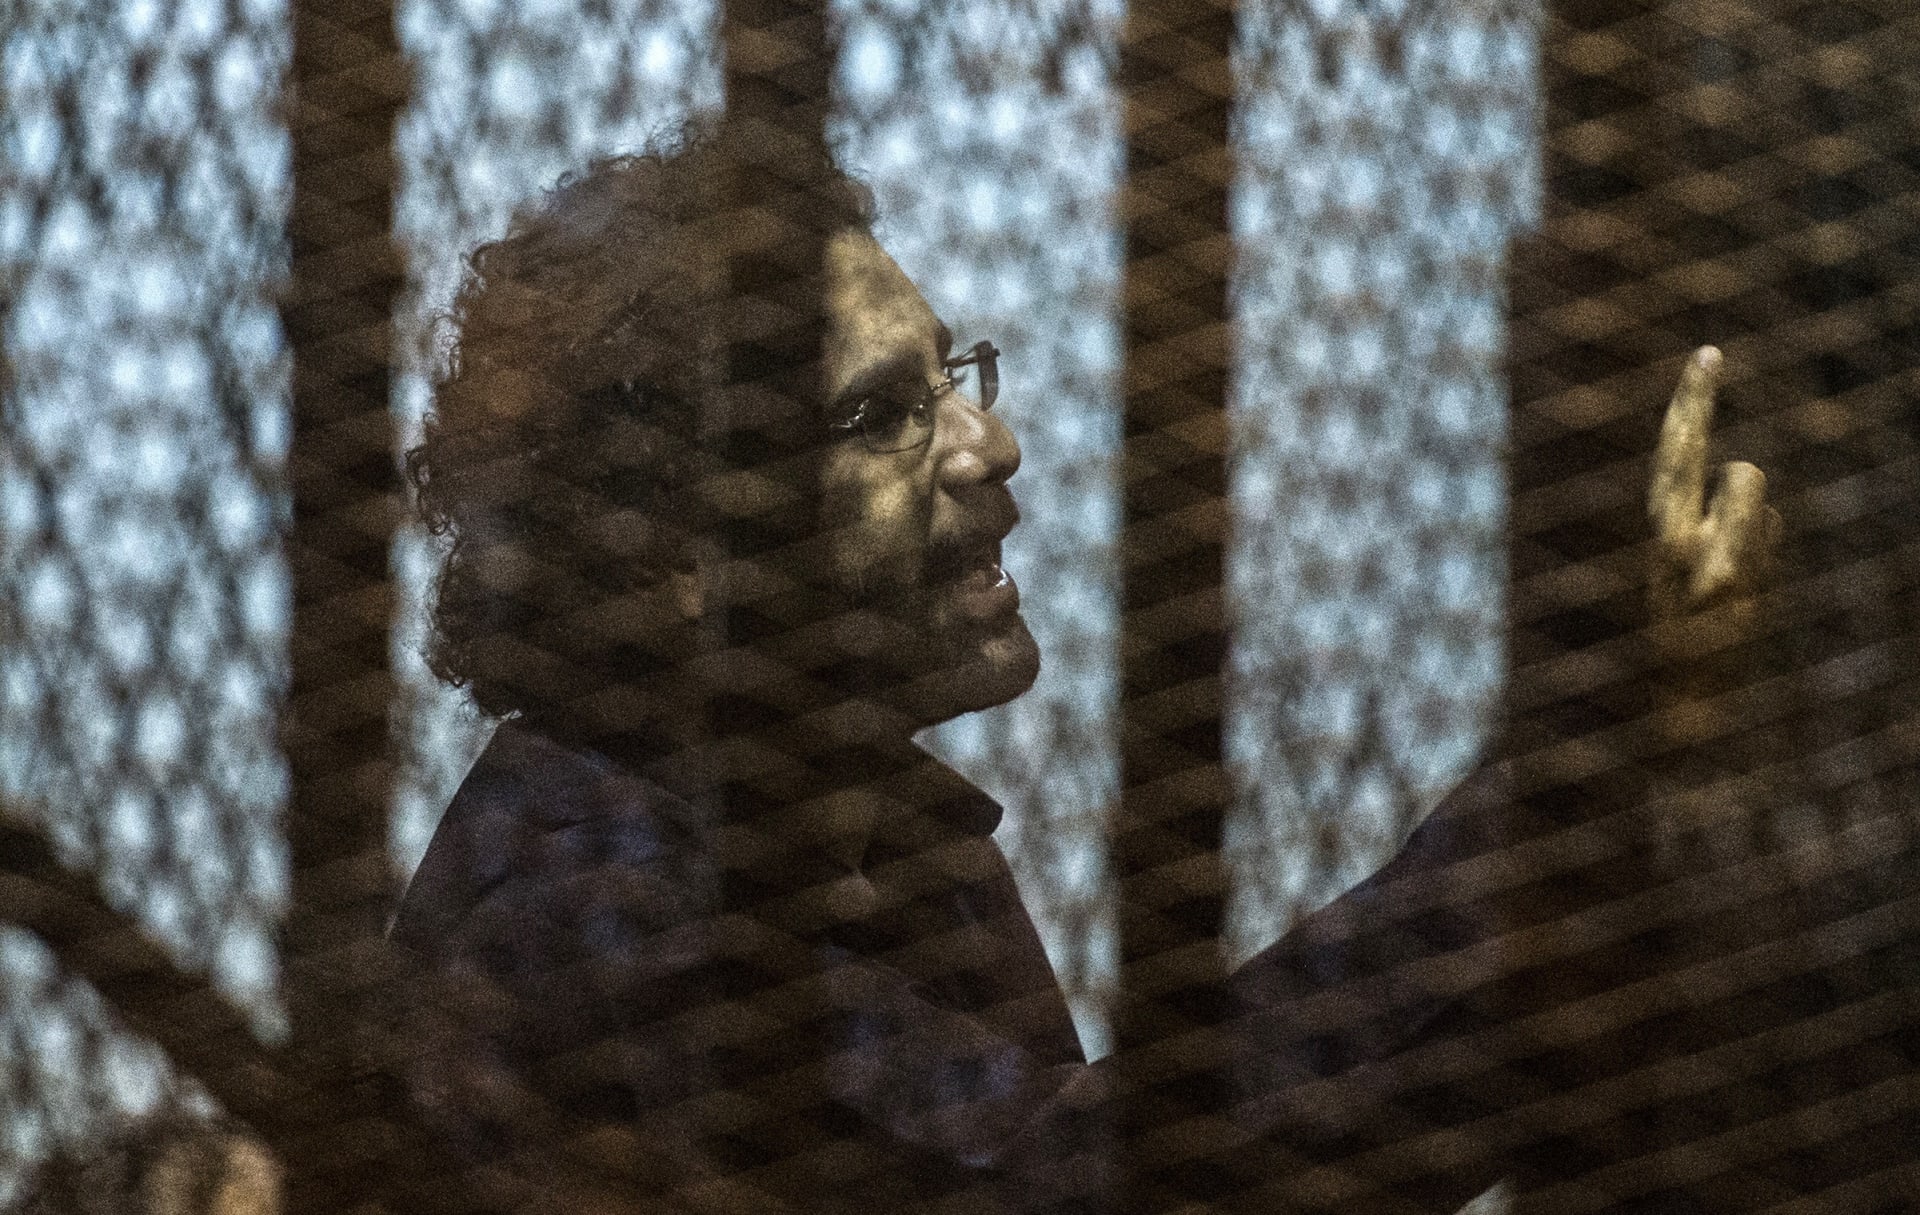 النيابة العامة المصرية: إضراب علاء عبدالفتاح مشكوك فيه و"صحته جيدة"